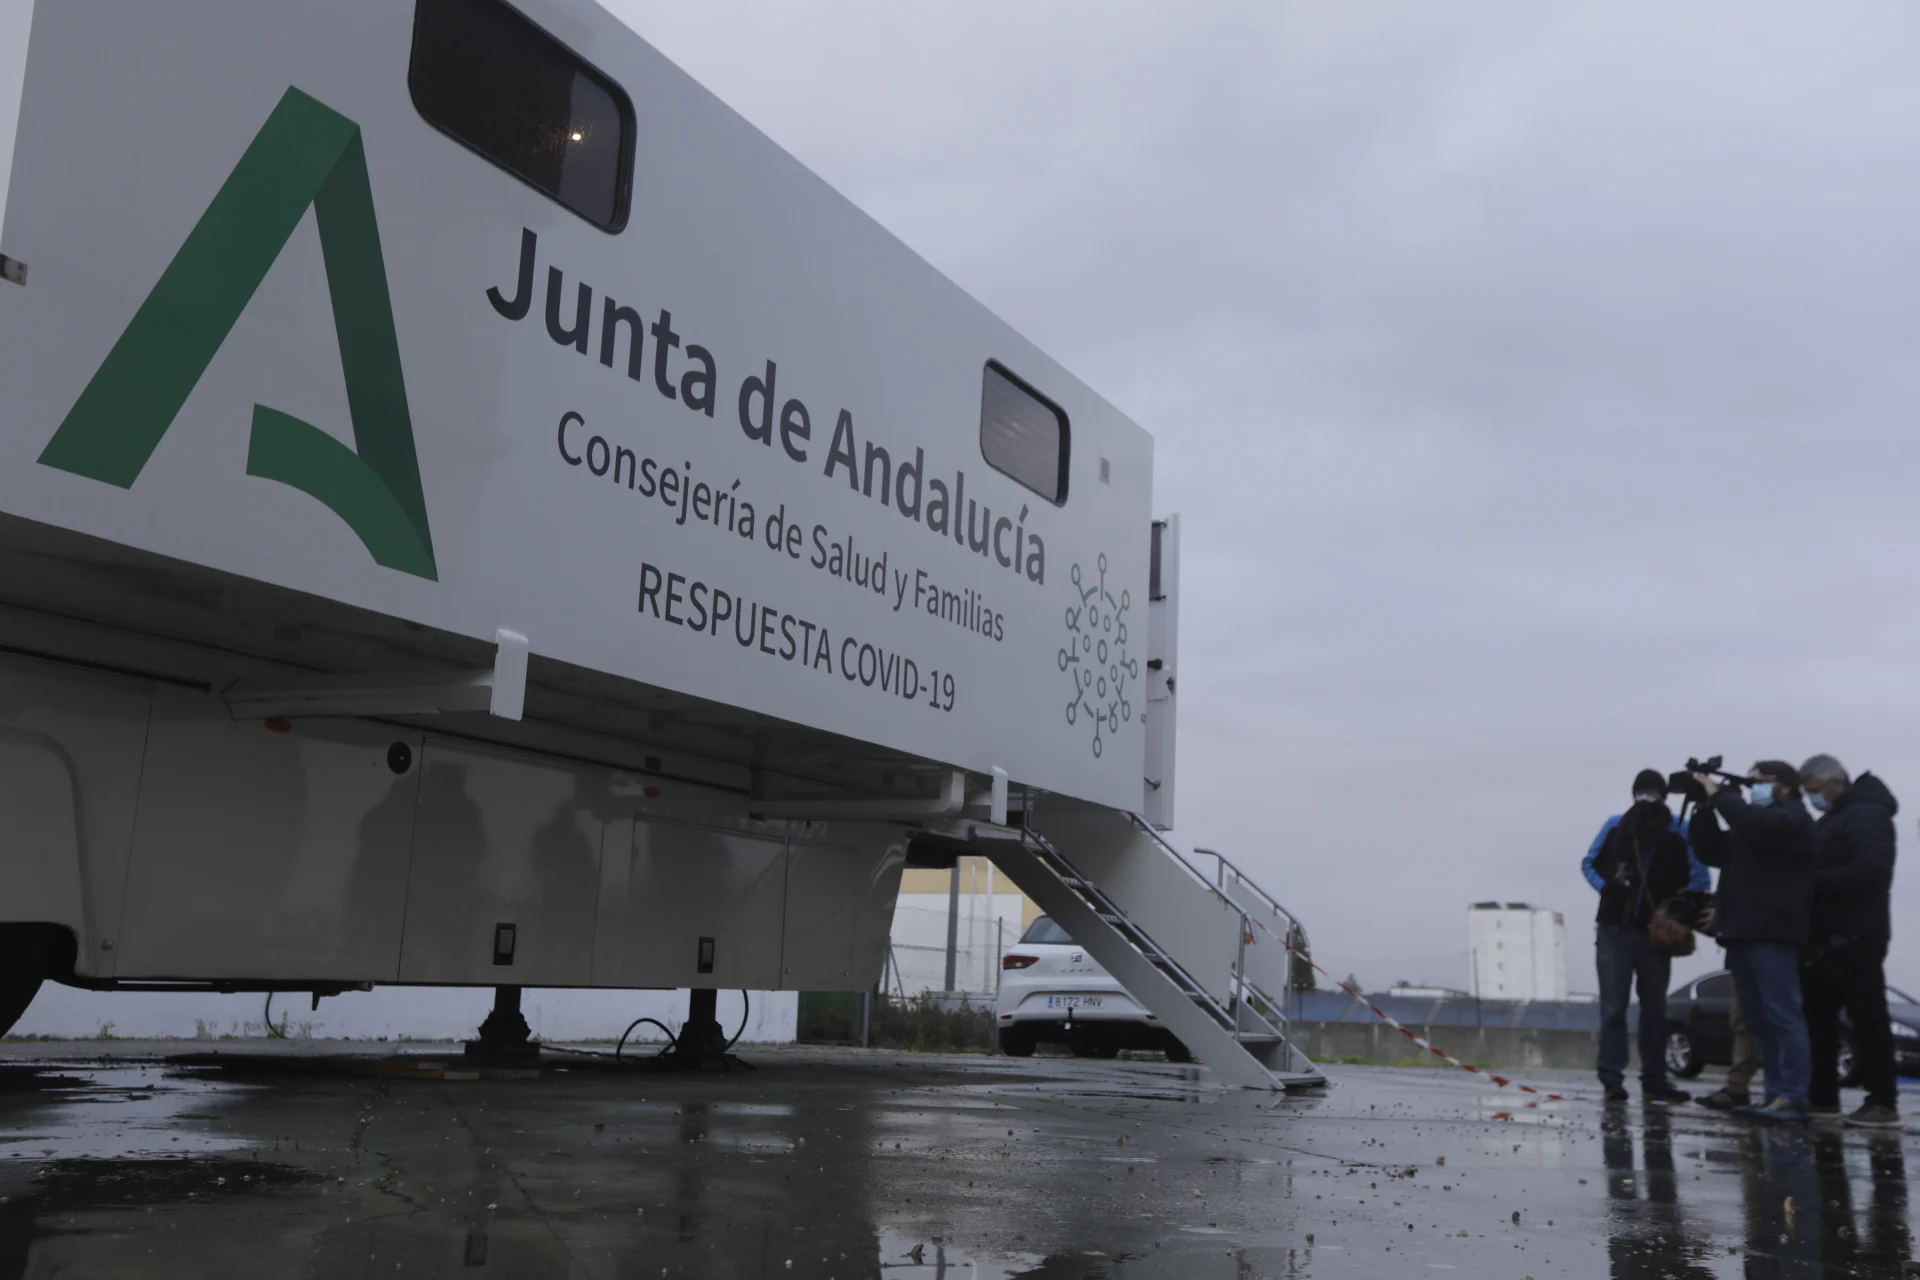 Fotos: Así es el nuevo camión que realiza los cribados masivos en la provincia de Cádiz